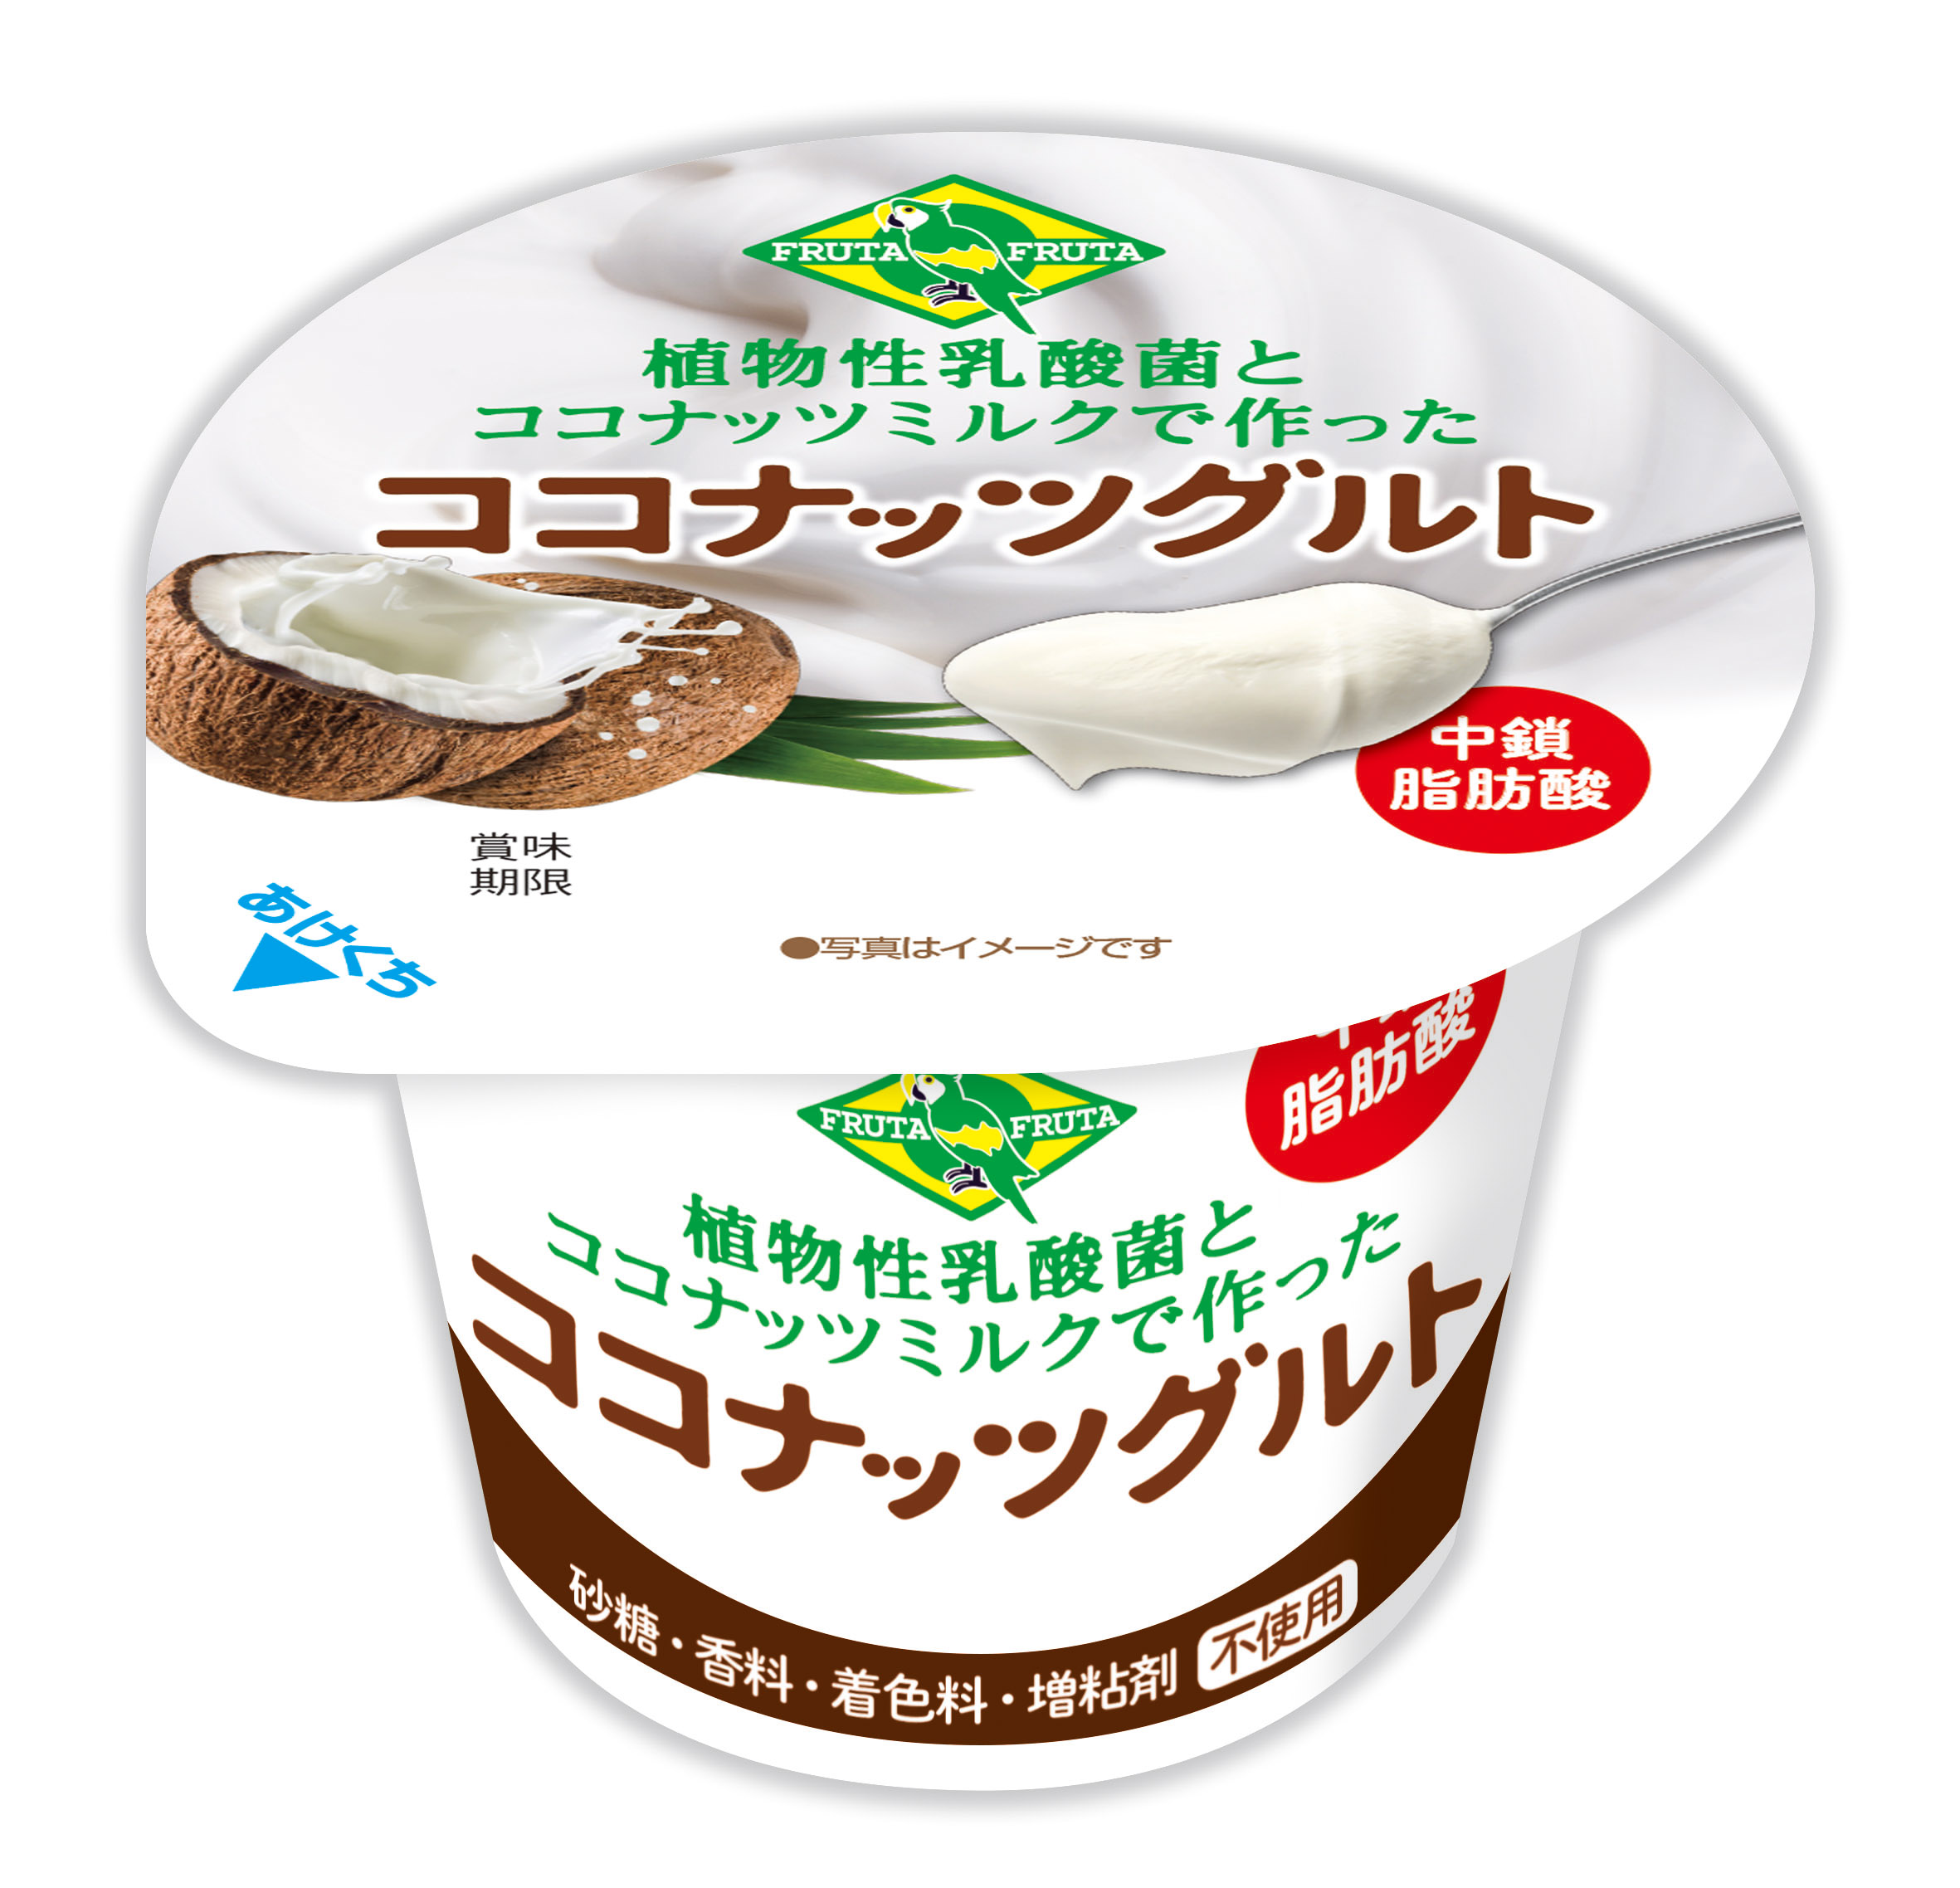 植物性乳酸菌を使用したココナッツミルクの乳酸発酵食品 ココナッツグルト ７月11日 水 より本州 四国の イオン イオンスタイル で発売 アサイーのフルッタフルッタ オフィシャルサイト